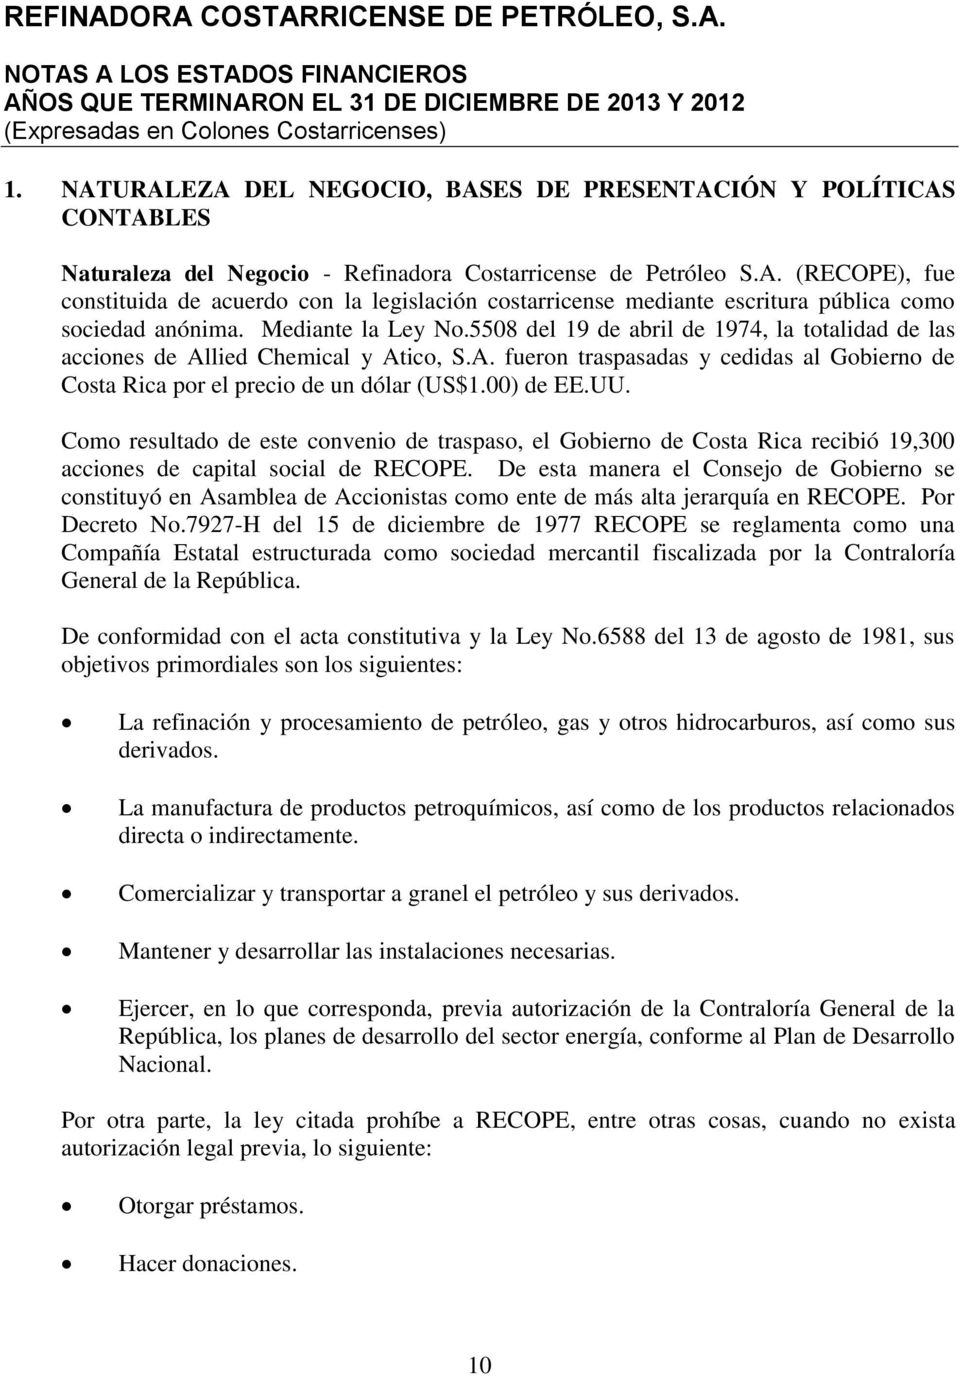 Mediante la Ley No.5508 del 19 de abril de 1974, la totalidad de las acciones de Allied Chemical y Atico, S.A. fueron traspasadas y cedidas al Gobierno de Costa Rica por el precio de un dólar (US$1.